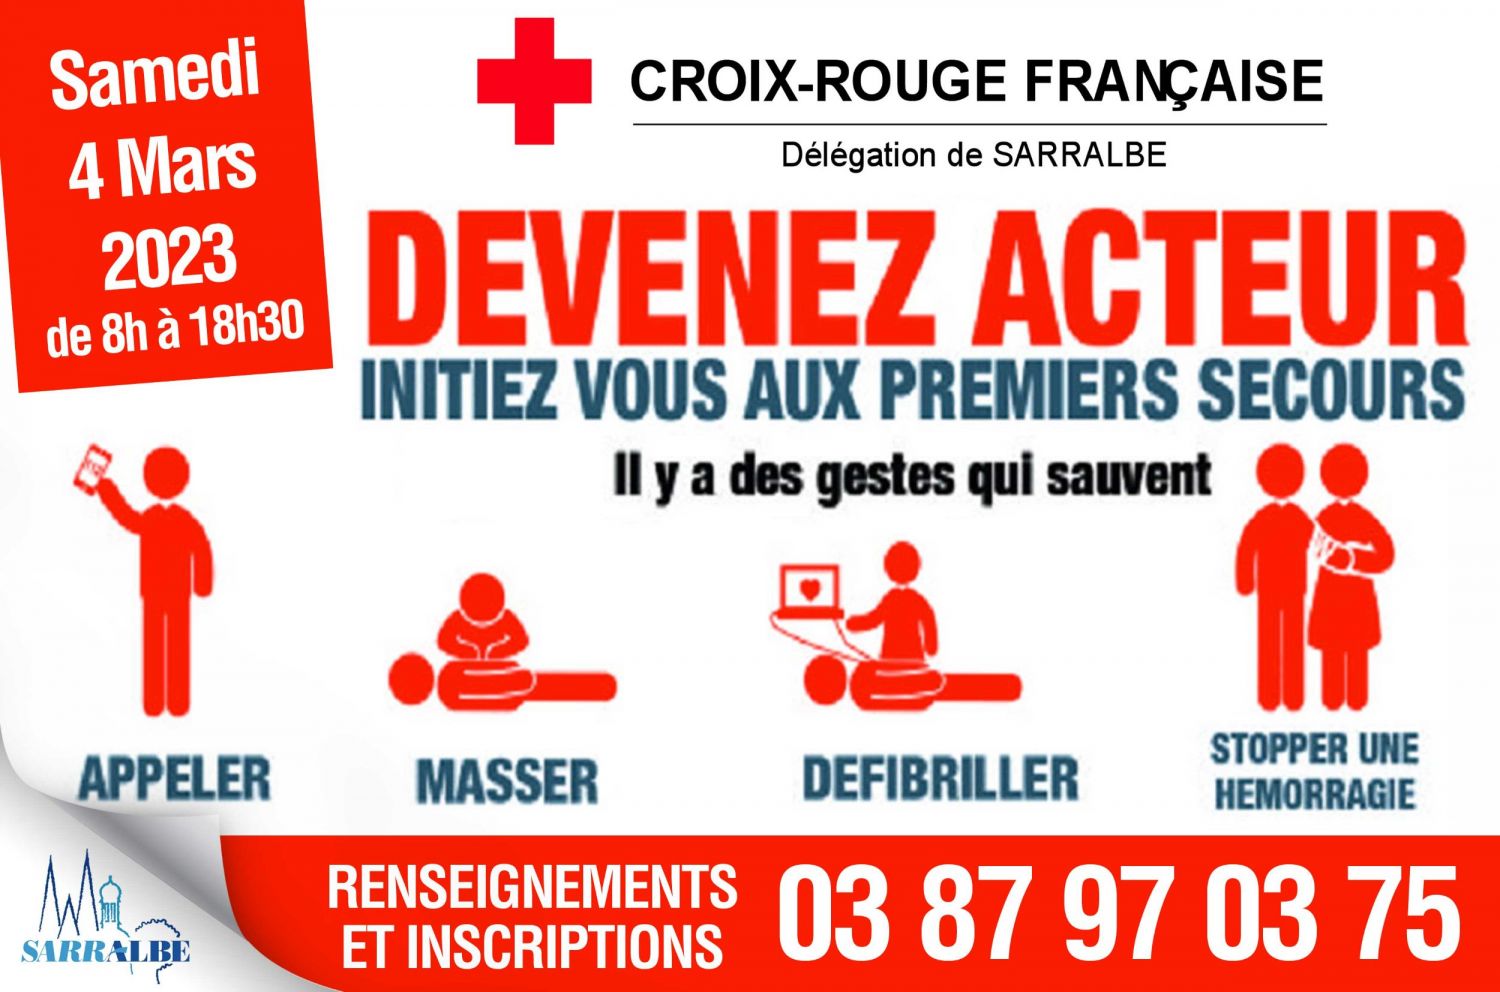 Croix-Rouge de Sarralbe - Formation Prévention et Secours Civiques de niveau 1 (PSC1) et Initiation à la Réduction des Risques (IRR)